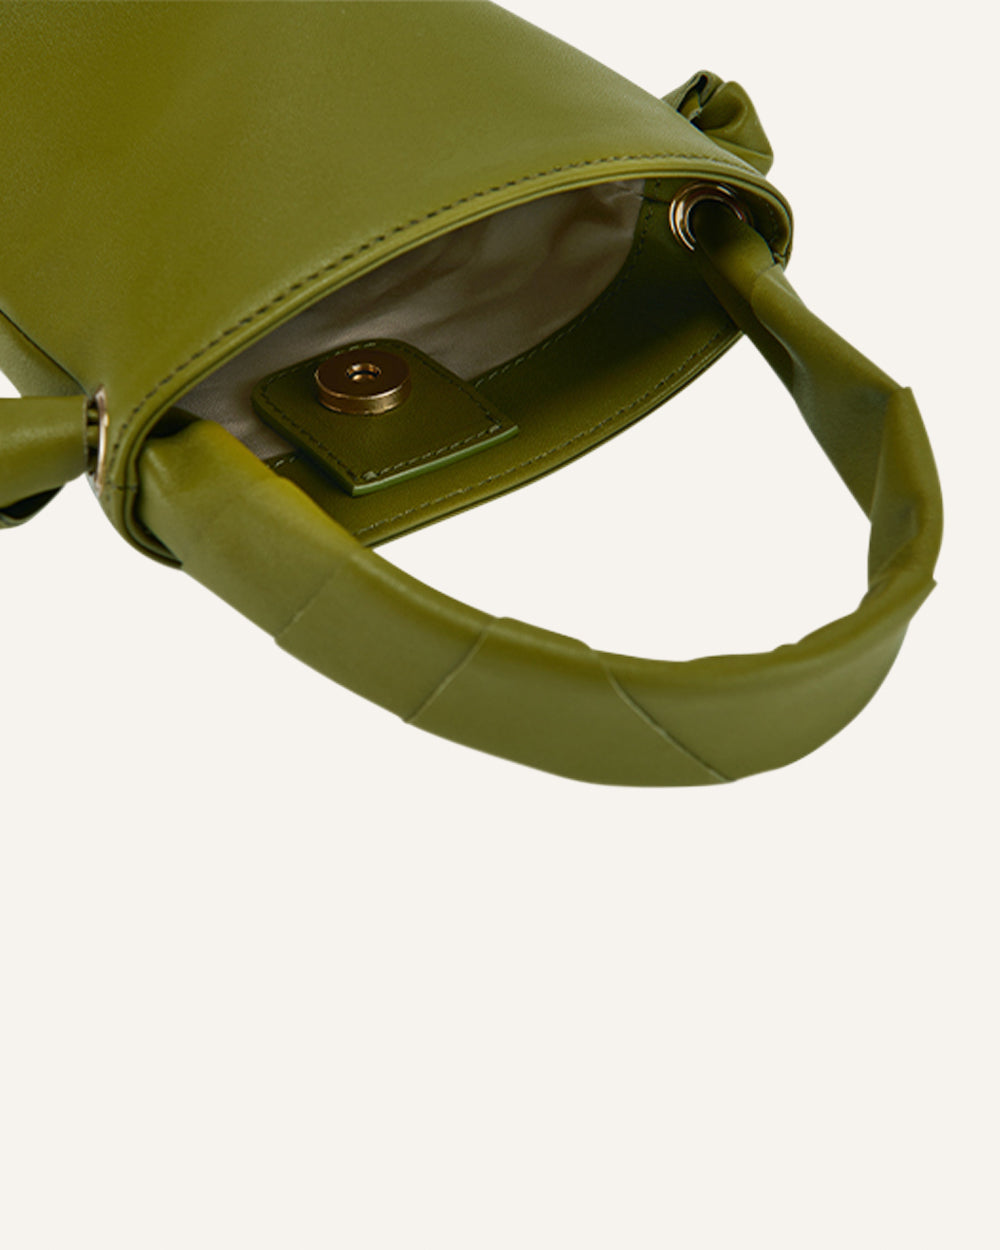 Pippi Cylinder Bag Green